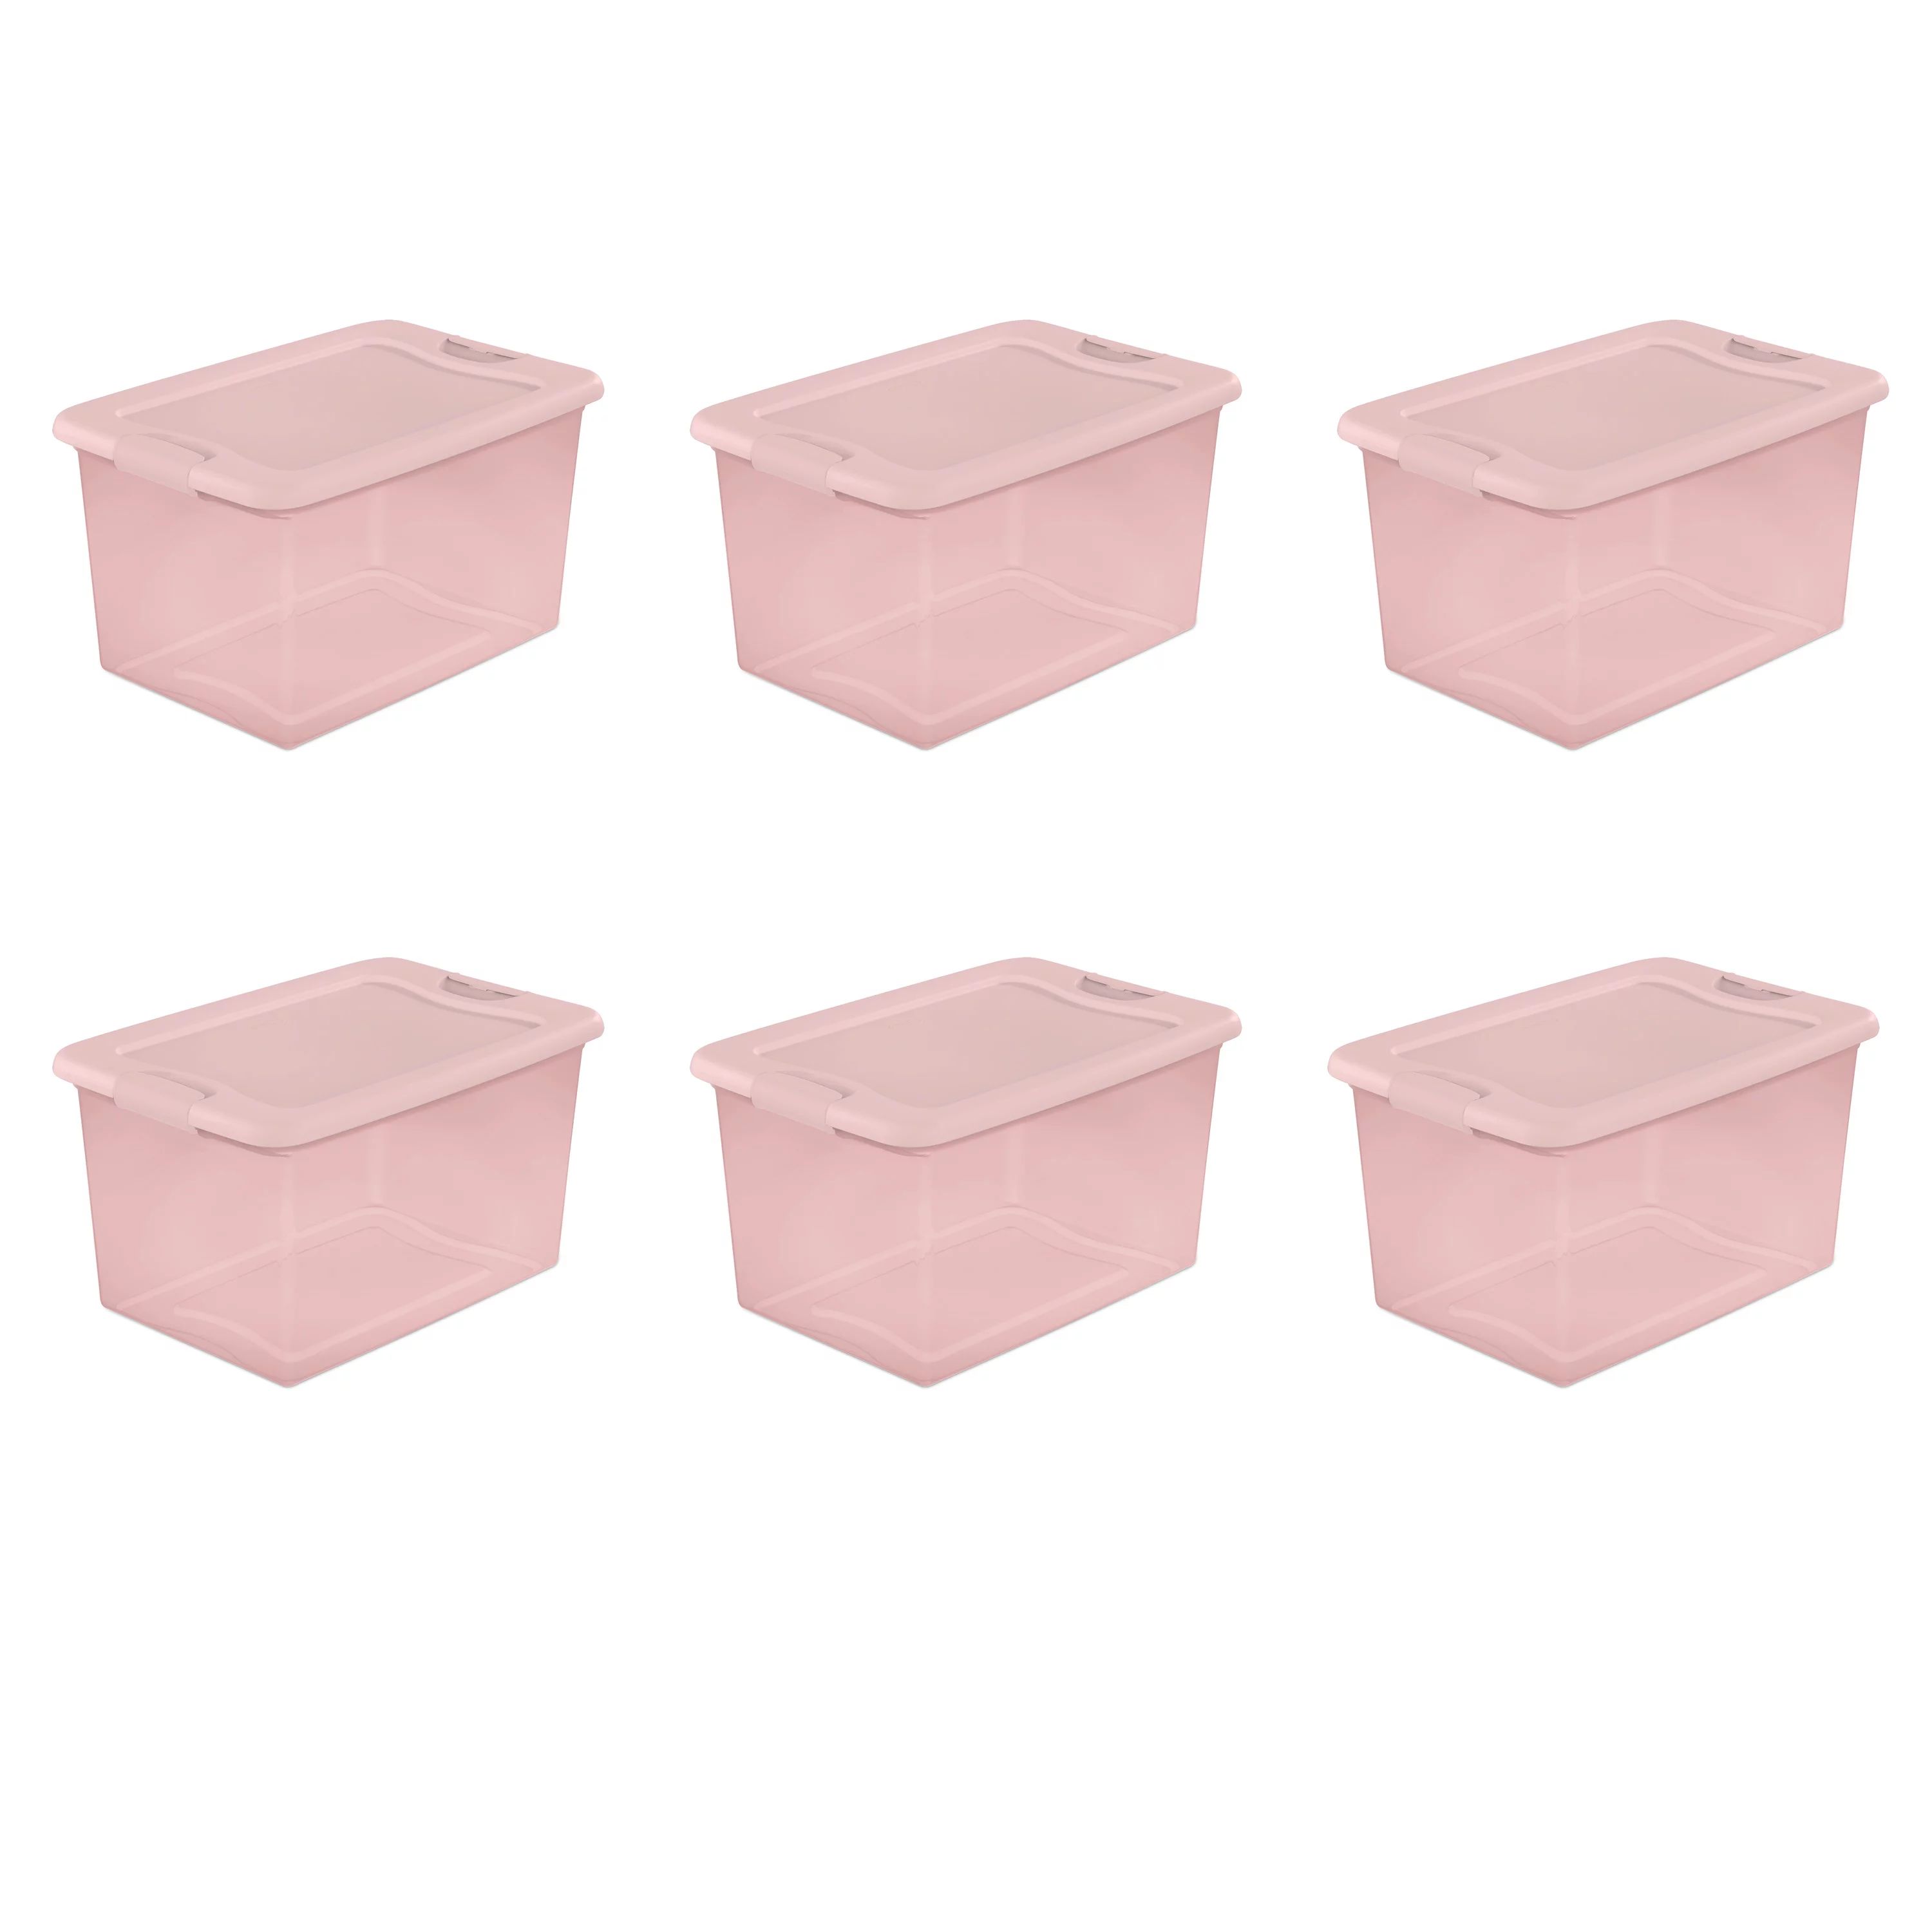 Sterilite 64 Qt. Latching Box Plastic, Blush Pink Tint, Set of 6 | Walmart (US)